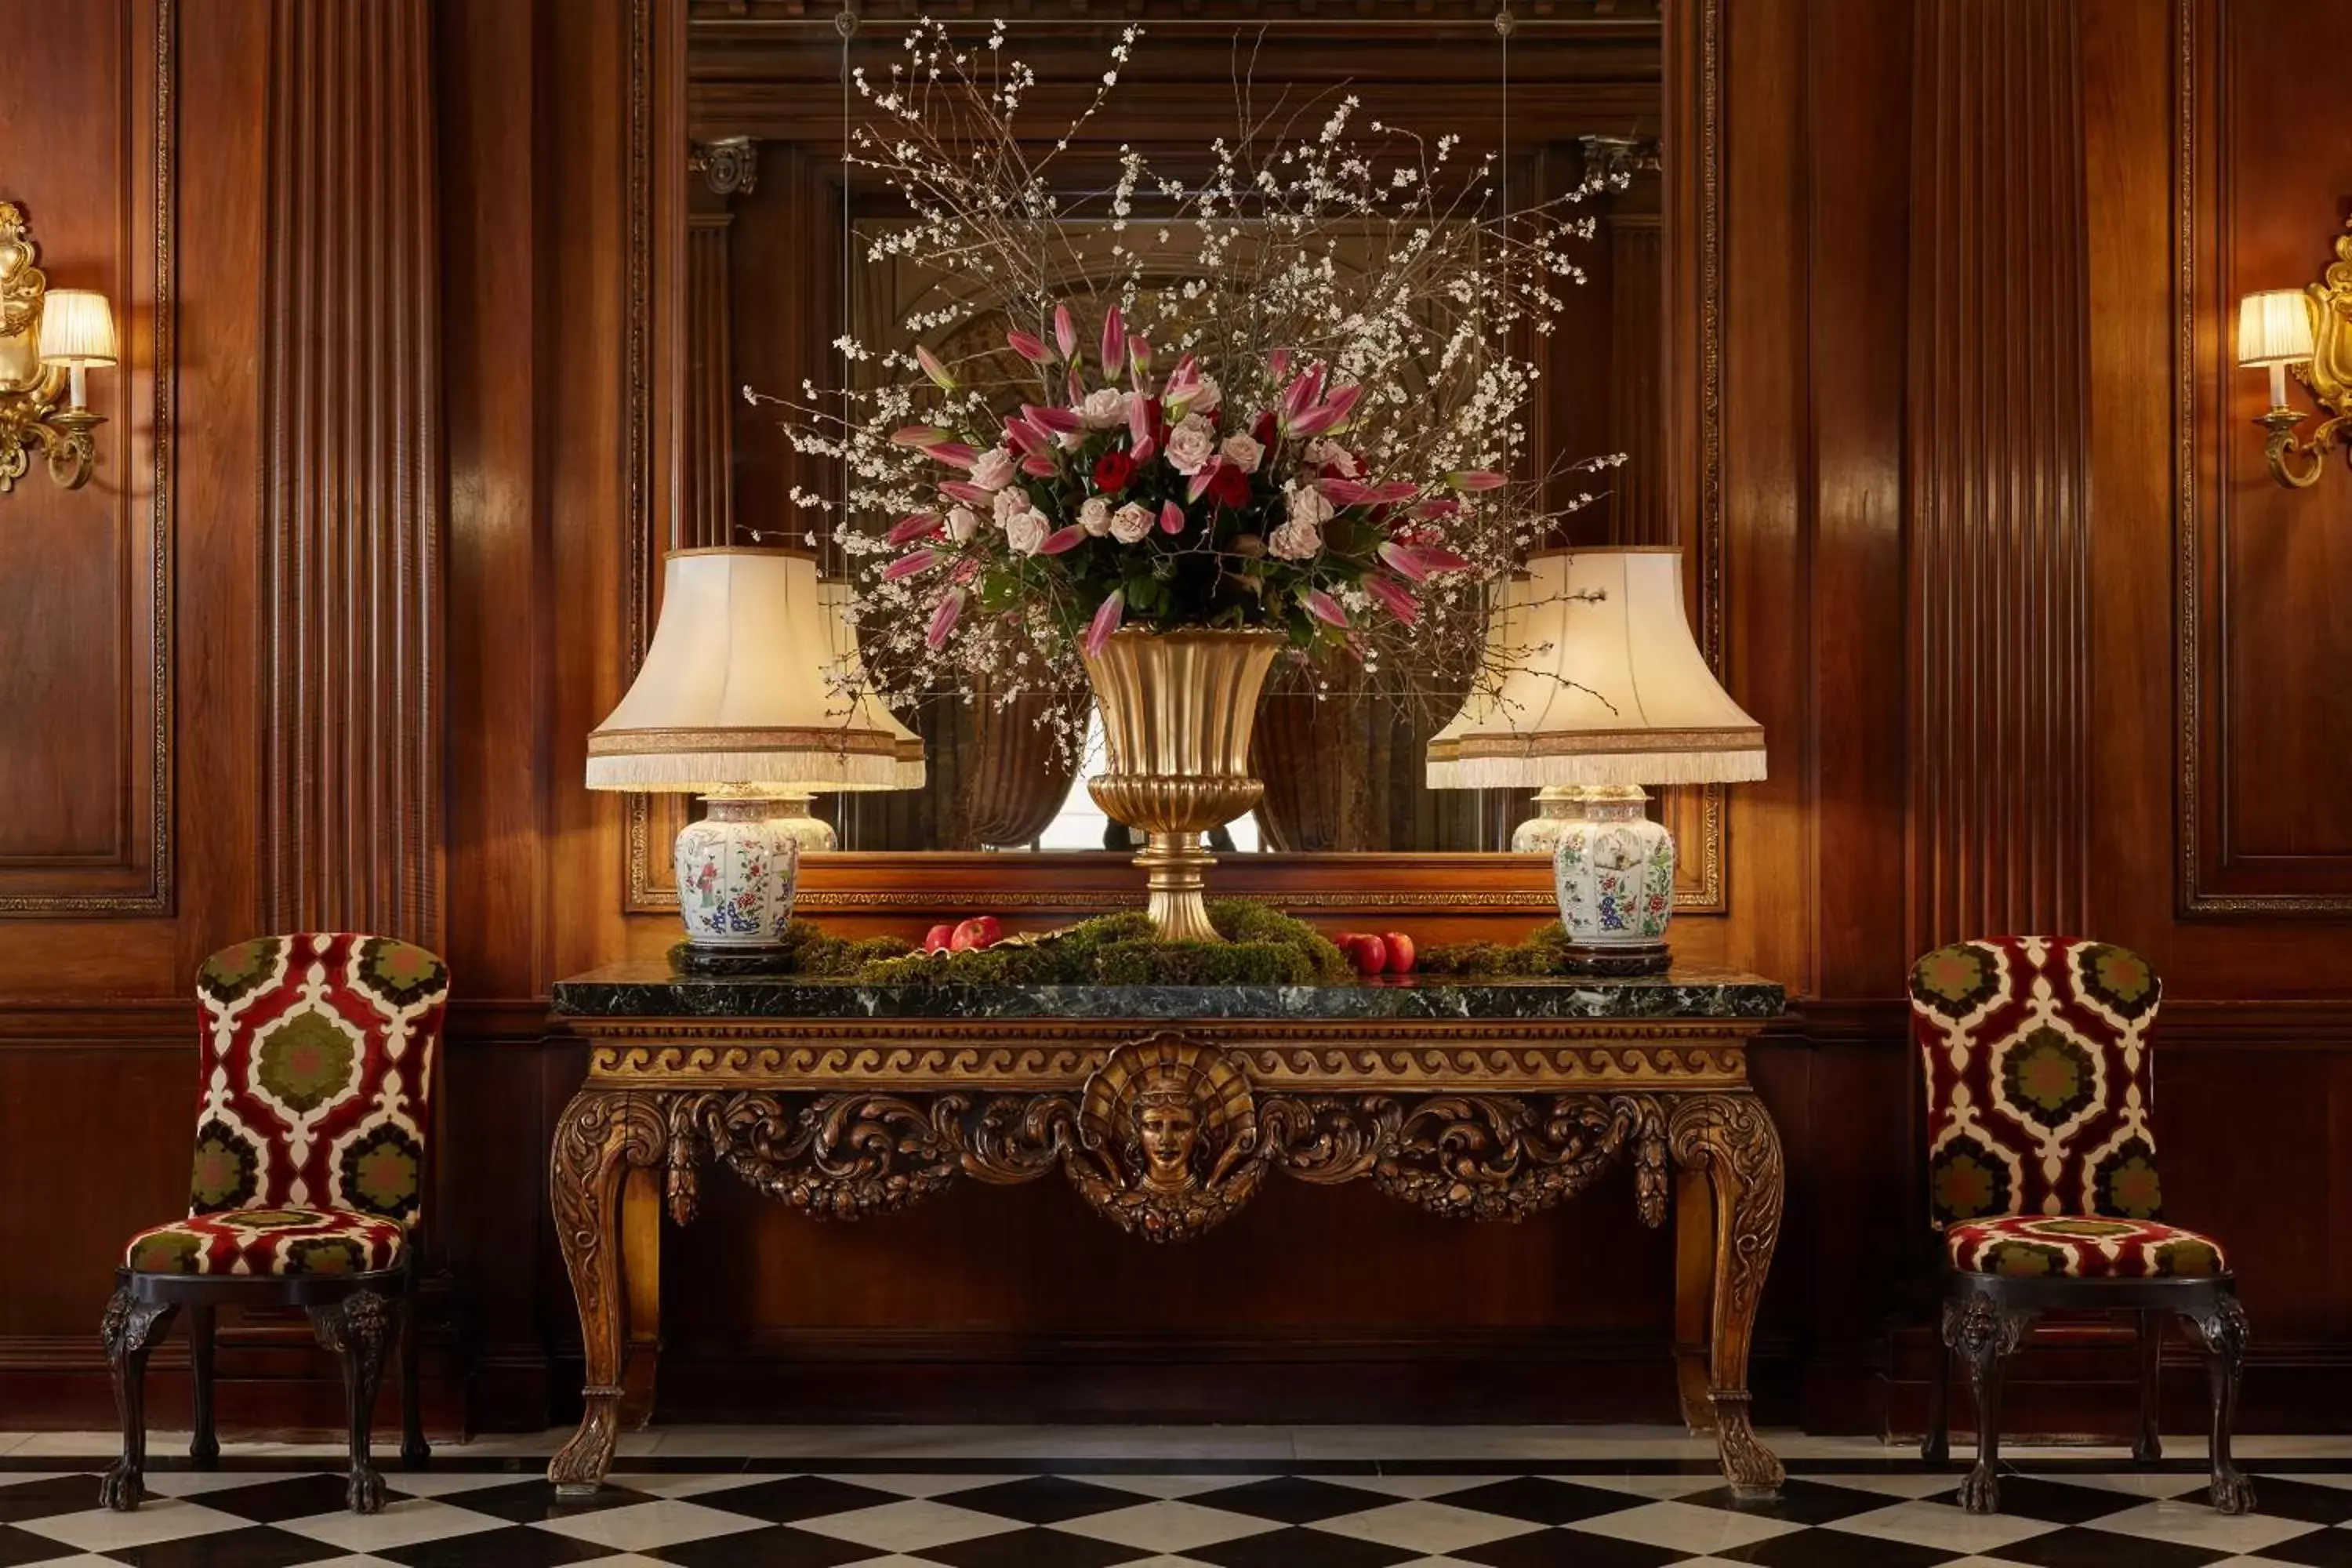 Lobby or reception in Hôtel Raphael